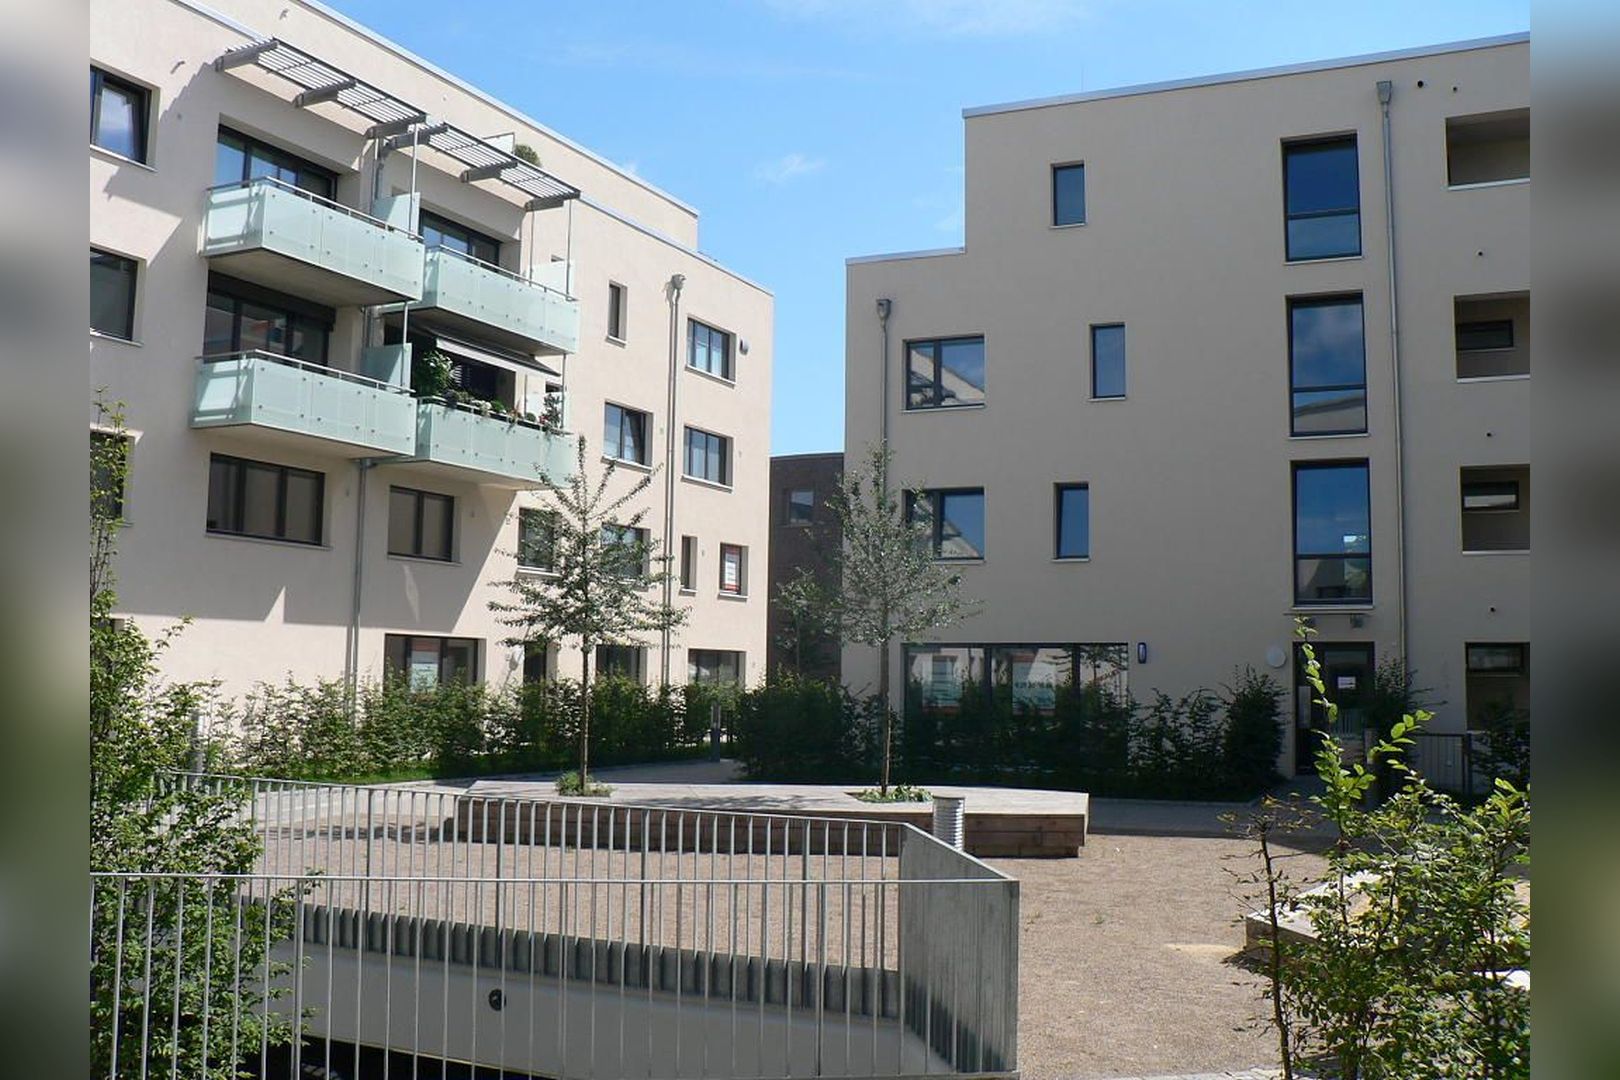 Immobilie Nr.Hilden 005 - 2-Raum-Maisonette-Wohnung mit Terrasse & Gärtchen - Bild 11.jpg